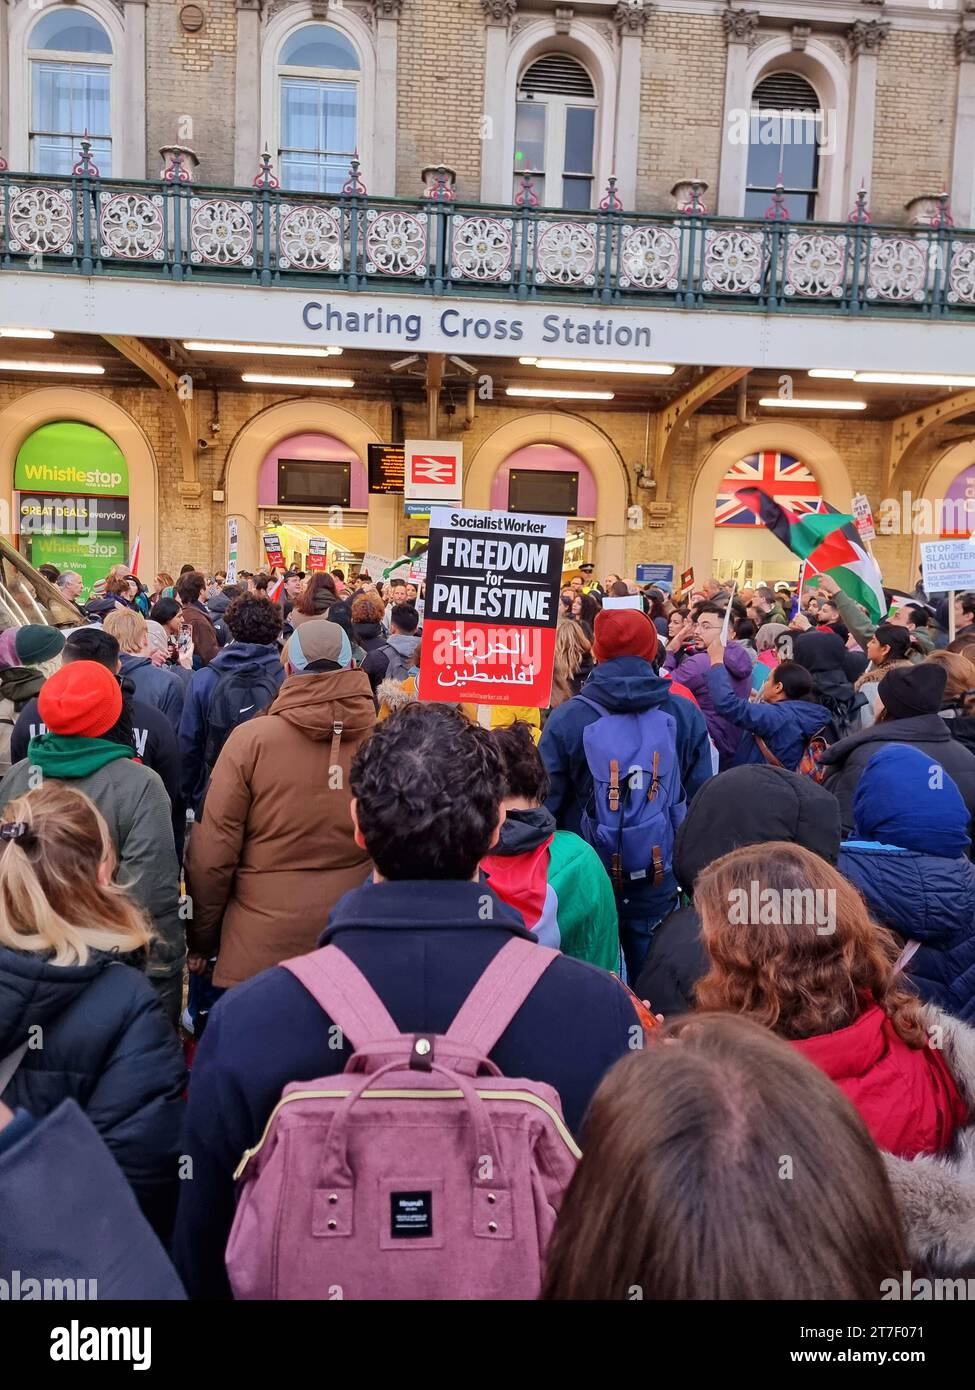 Tausende von Demonstranten erheben Stimmen, tragen Plakate und zeigen ihre Unterstützung für die Palästinenser am Trafalgar Square im Zentrum Londons. Vereinigtes Königreich. Stockfoto